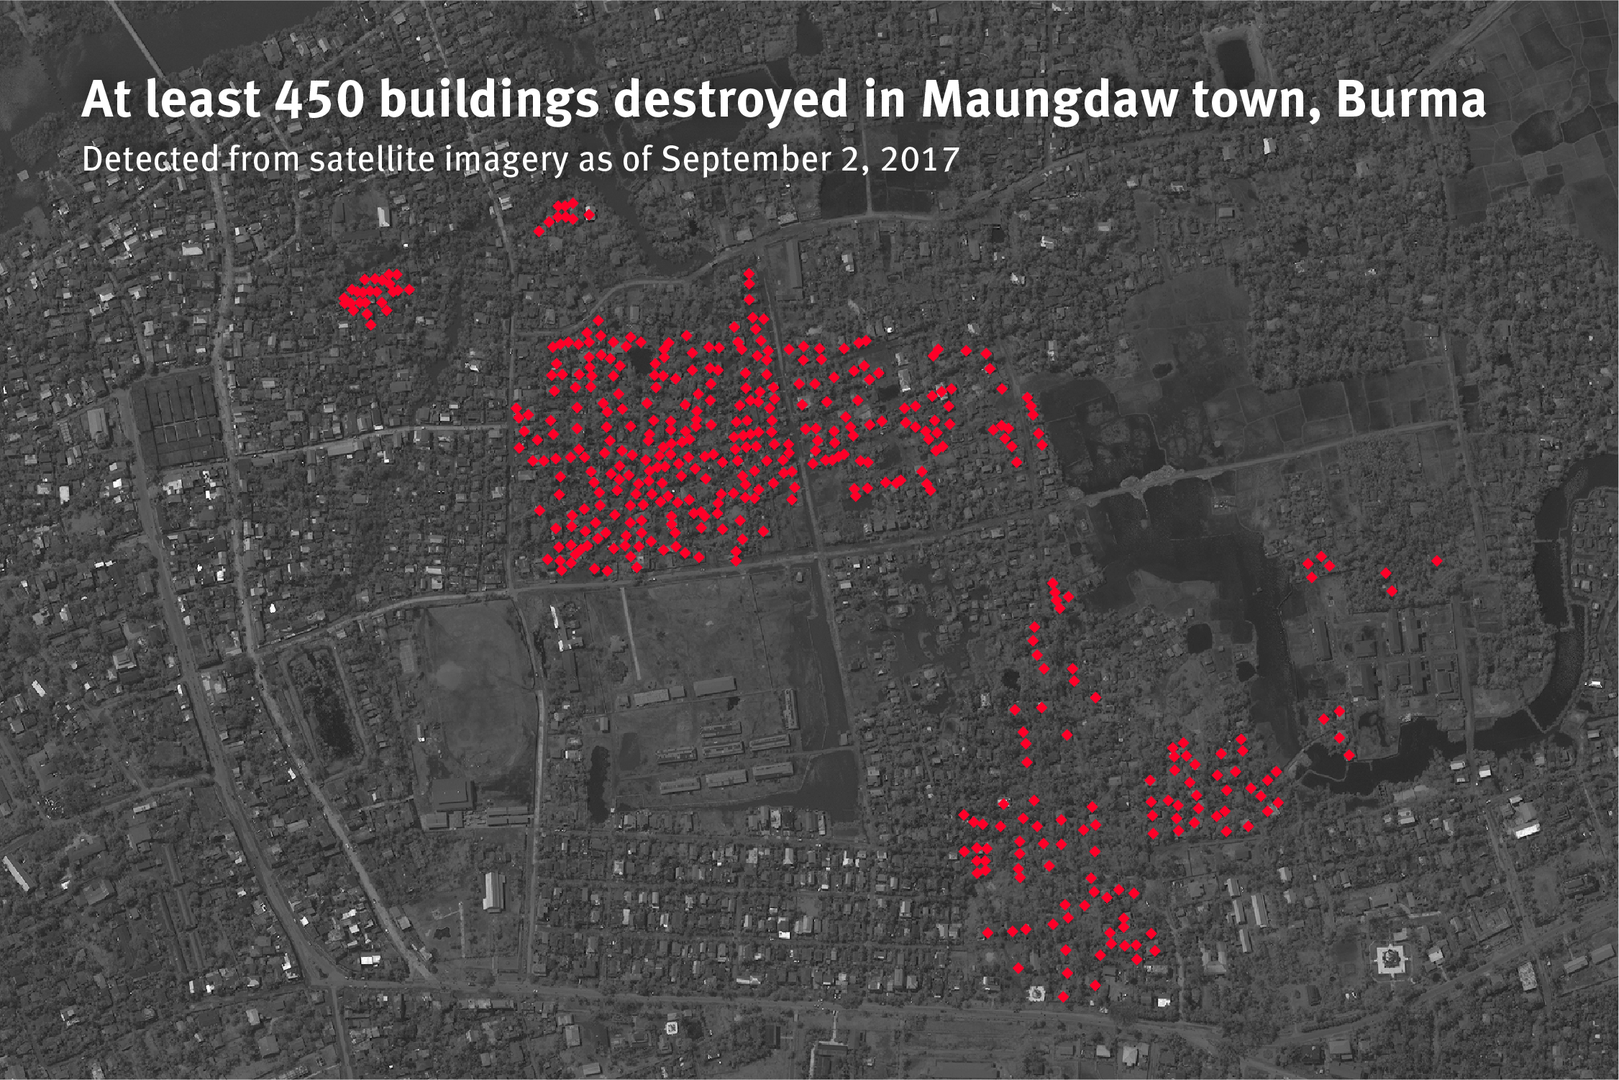 Au moins 450 bâtiments ont été détruits par le feu dans la ville de Maungdaw, en Birmanie – Image satellite prise le 2 septembre 2017.